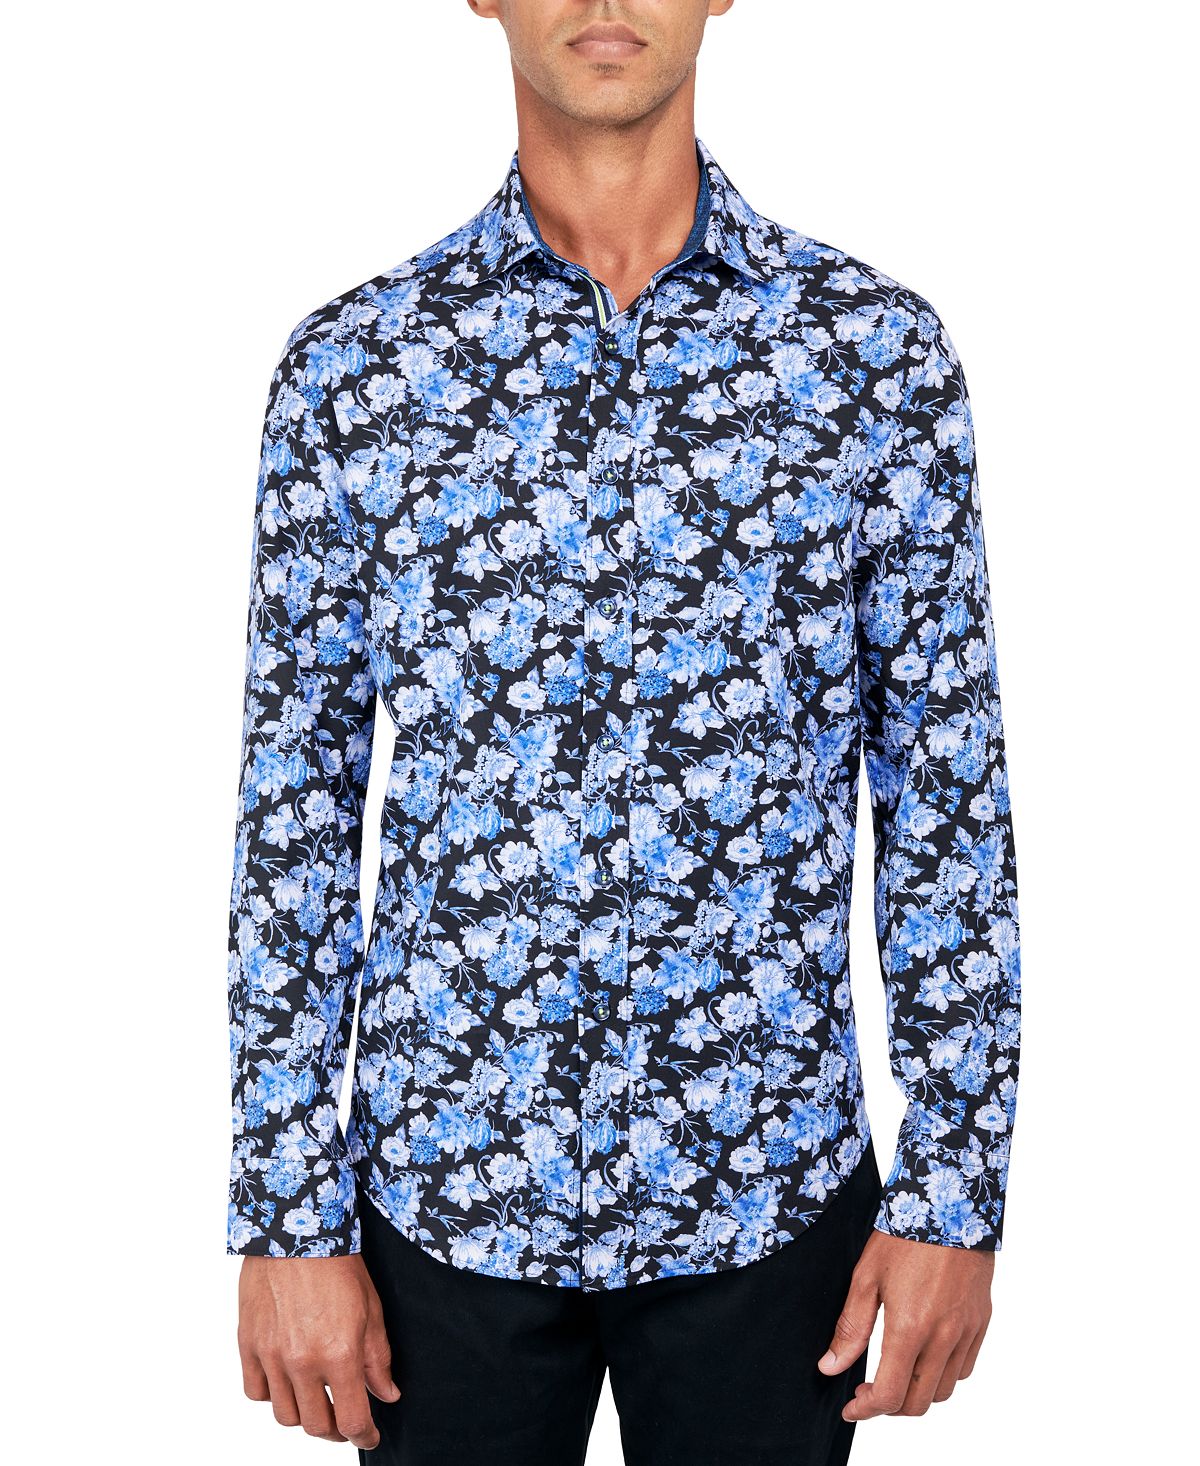 Мужская рубашка на пуговицах стандартного кроя без утюга Performance Stretch с цветочным принтом Society of Threads